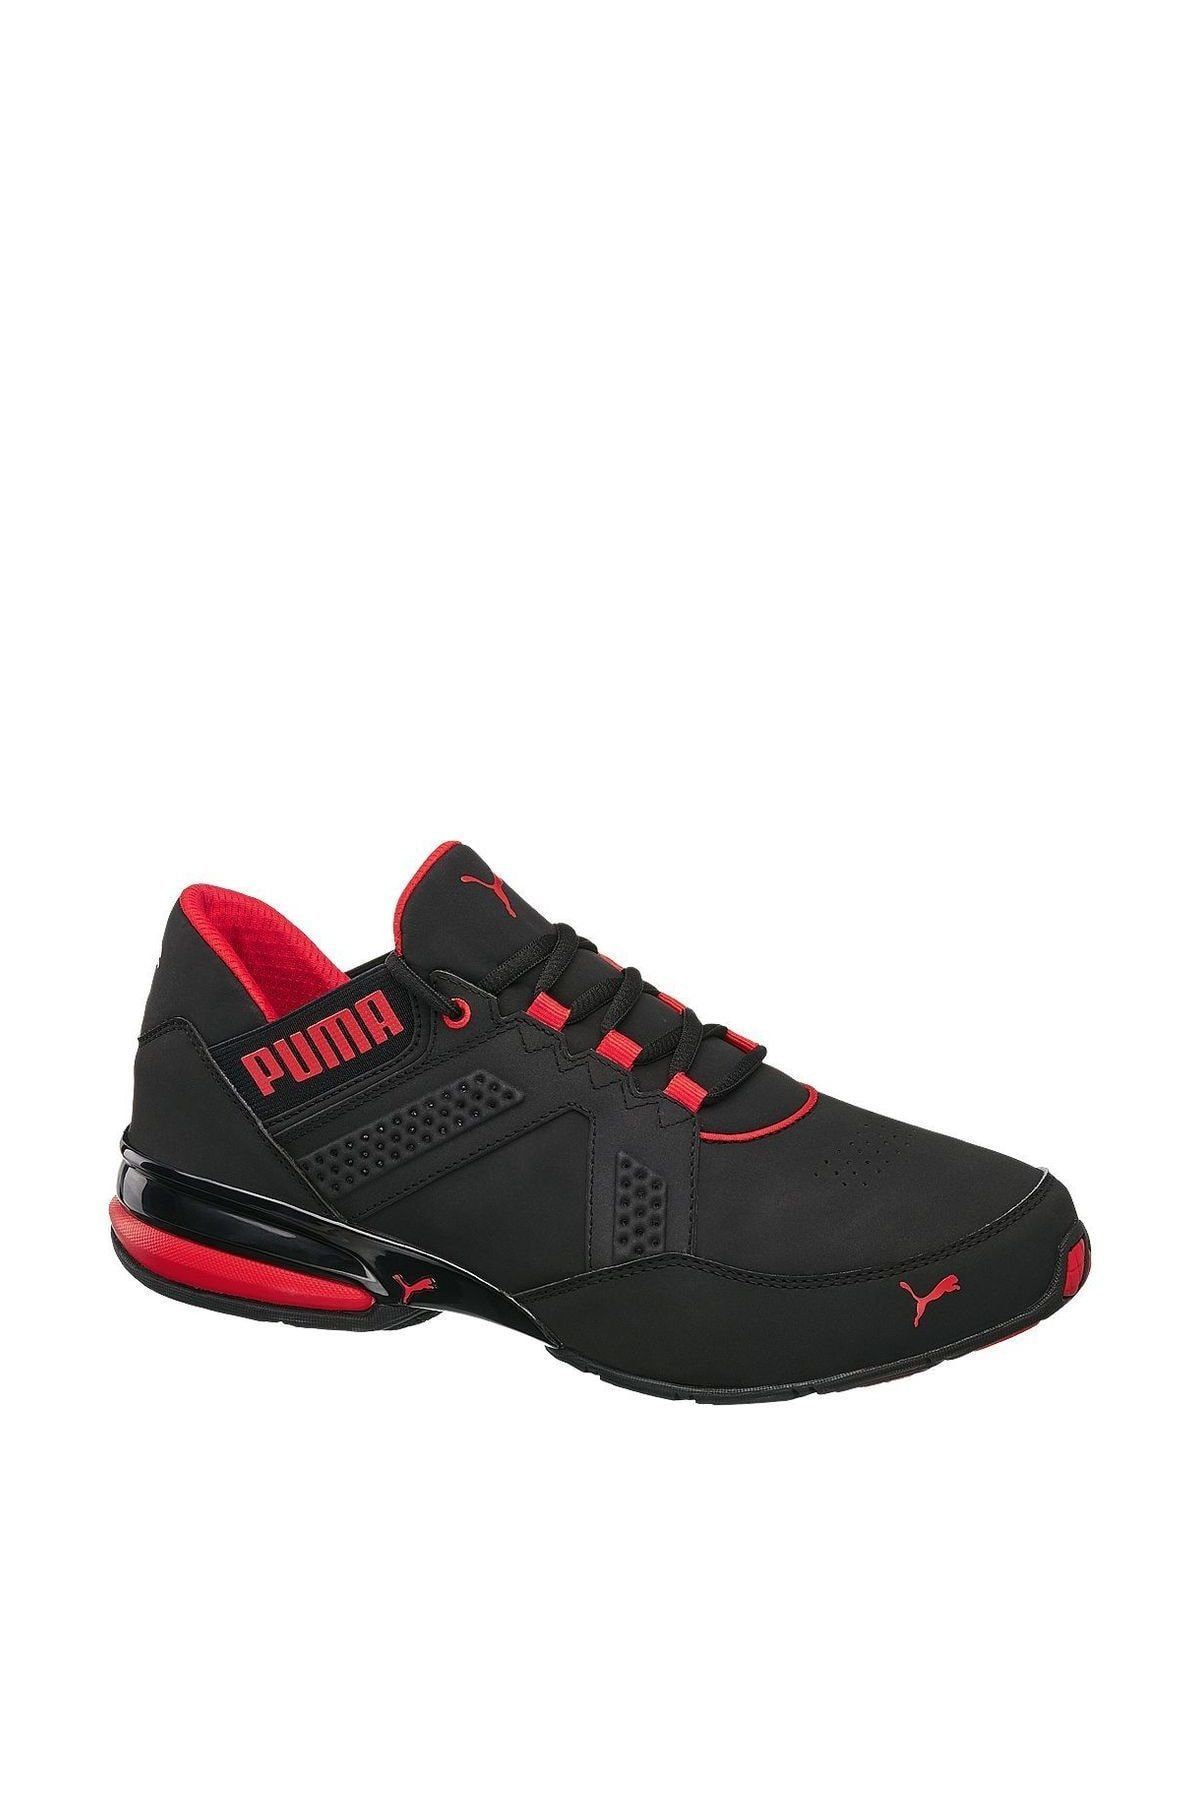 Adolescencia interno Embajada Puma Sneaker Erkek Ayakkabı Siyah 18421500 Fiyatı, Yorumları - Trendyol